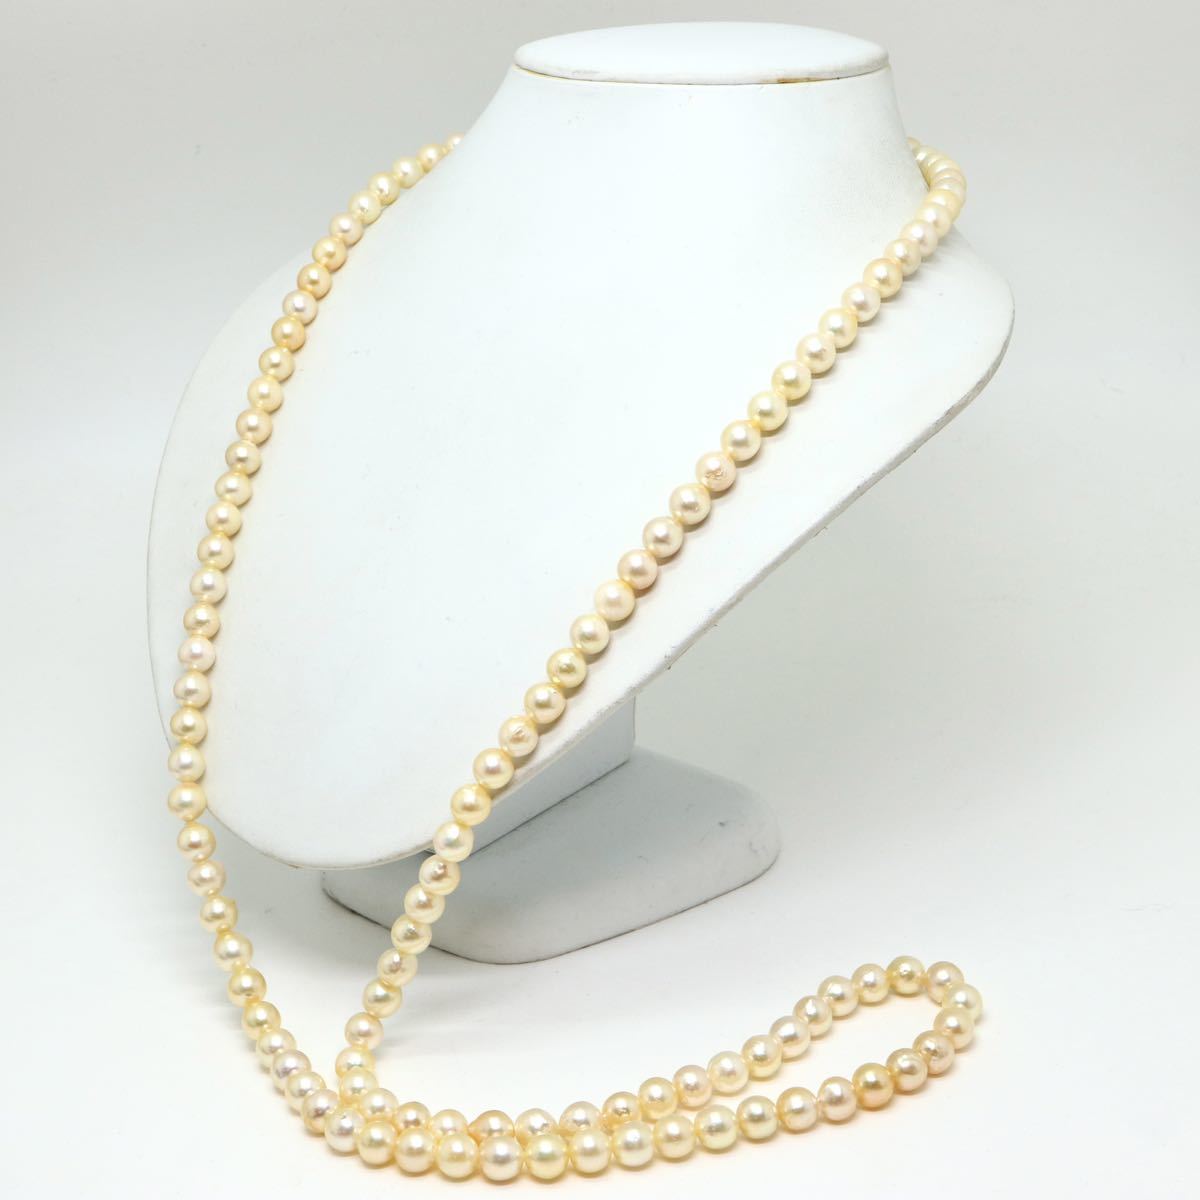 ソーティング付き!!《アコヤ本真珠ネックレス》J 8.0-8.5mm珠 93.4g 100cm pearl necklace ジュエリー jewelry EB0/EC0_画像3